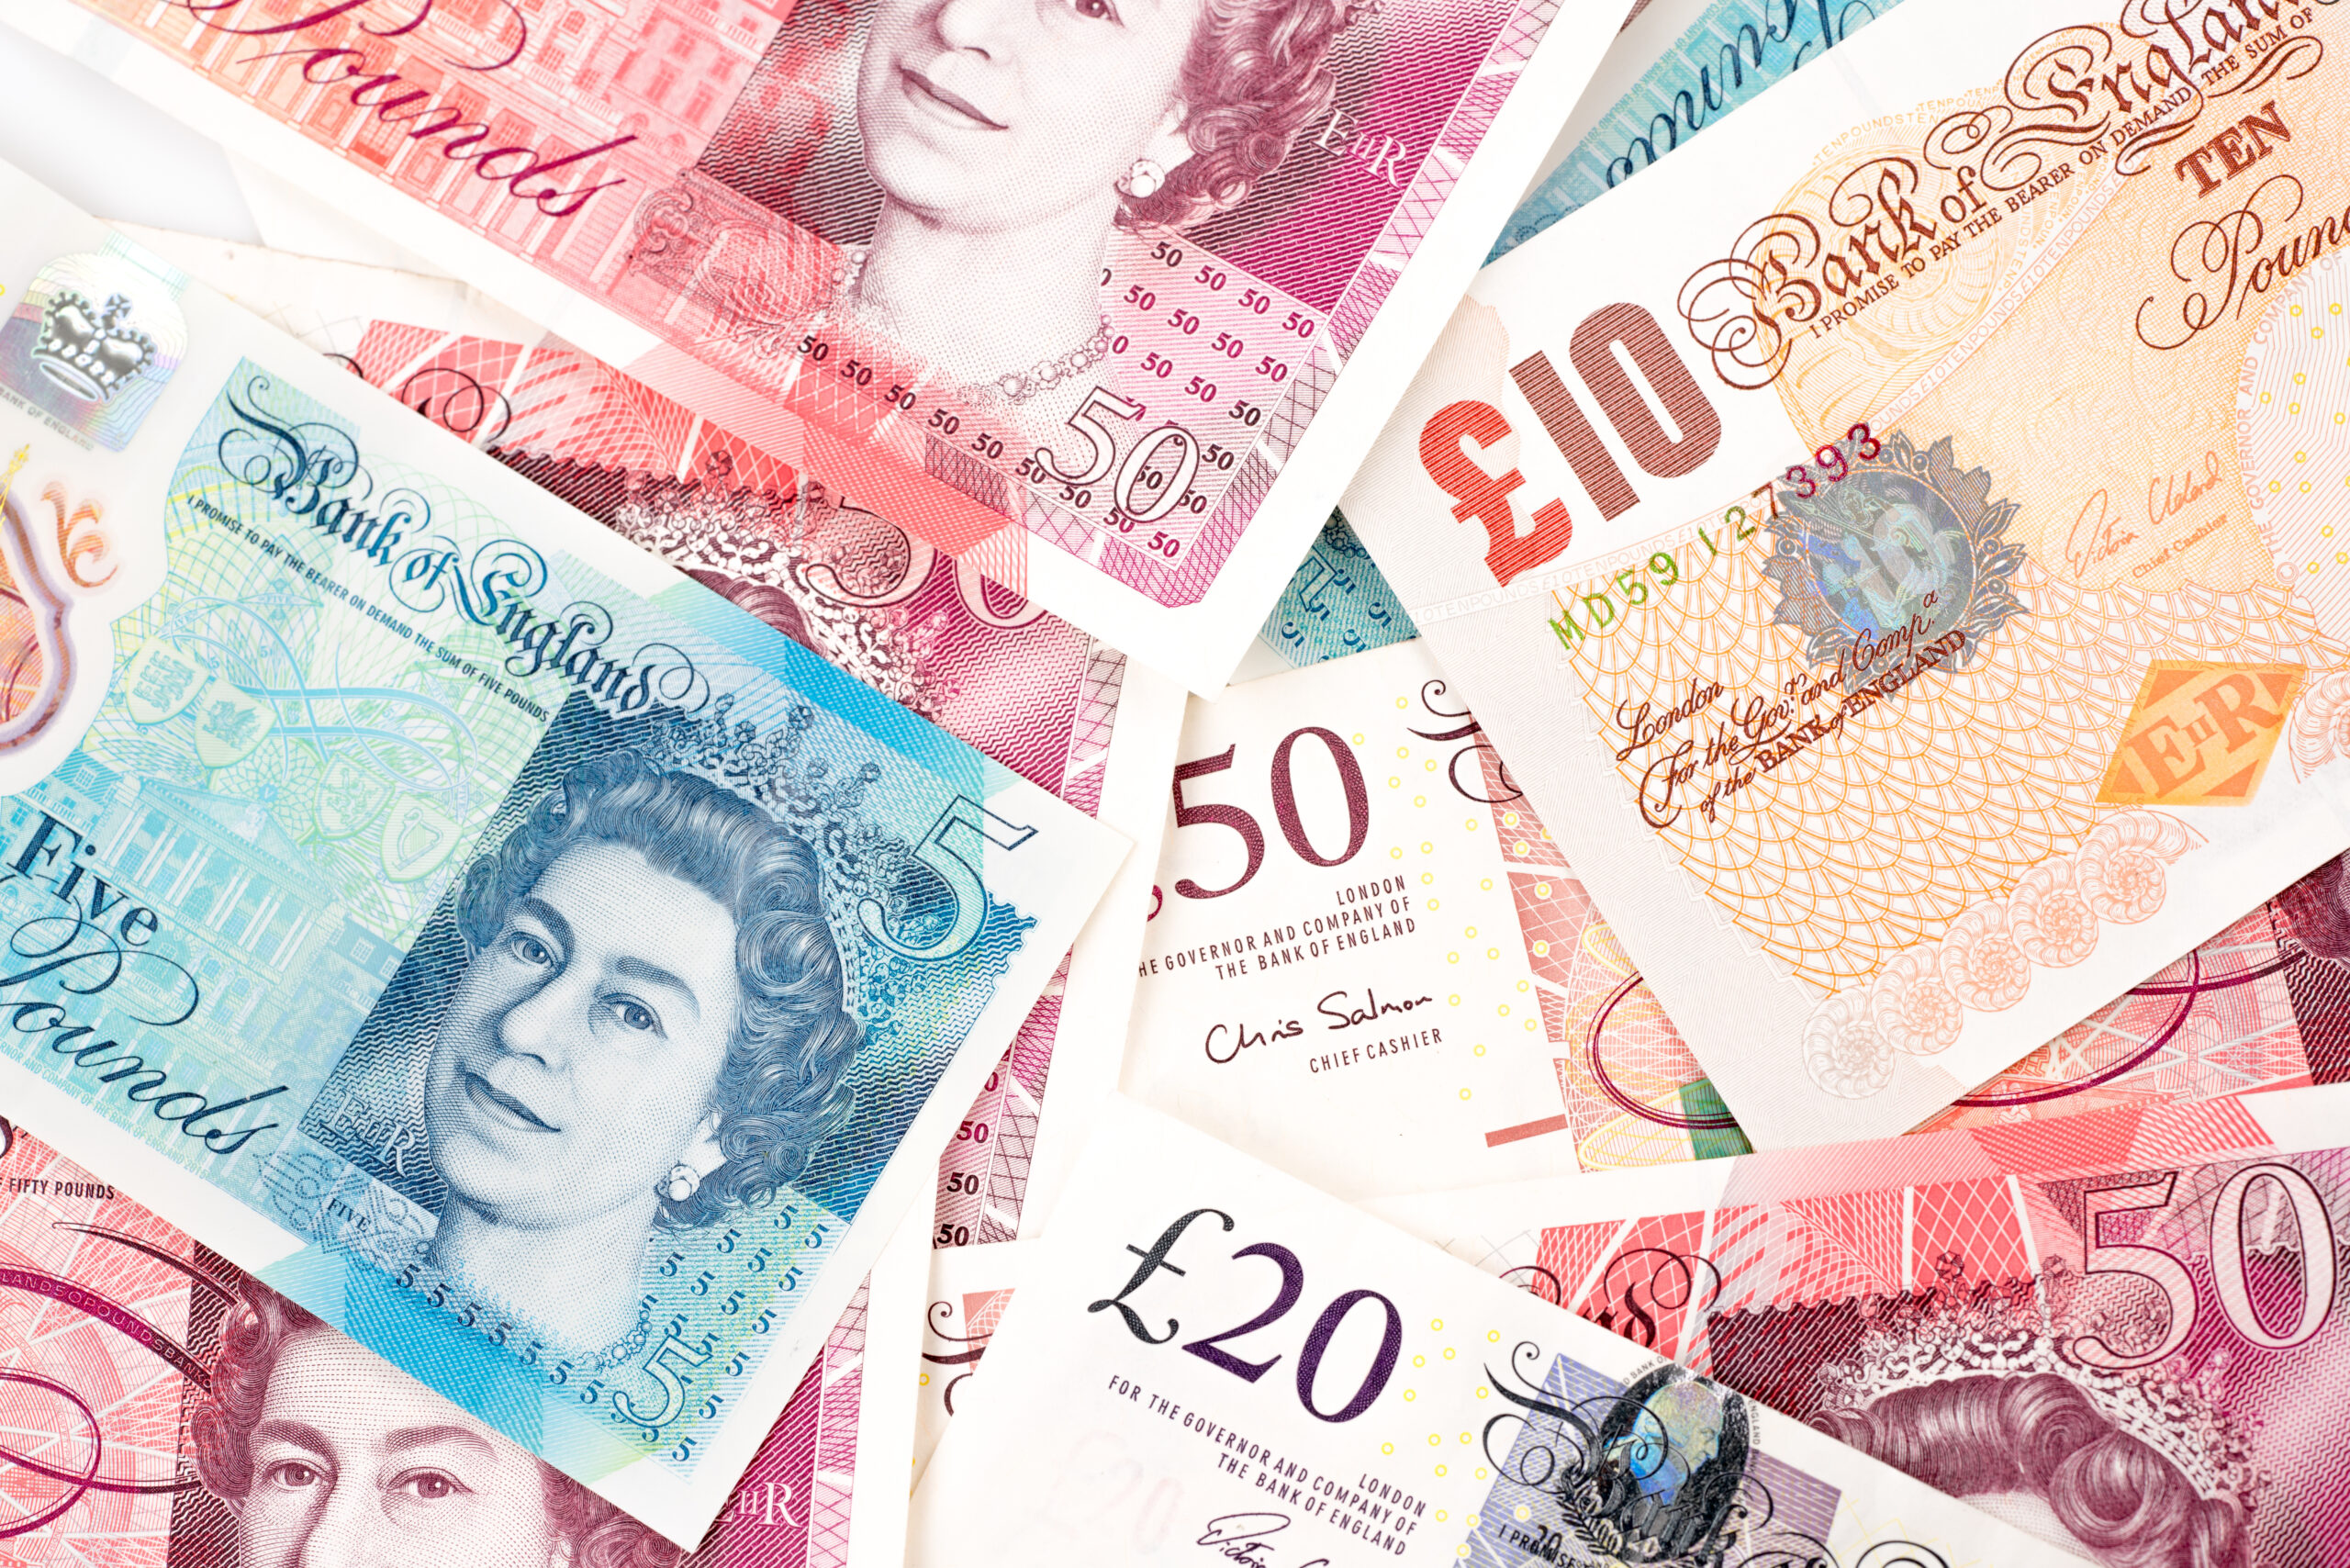 British,Pound,Money,Bills,Of,United,Kingdom,In,Different,Value,pound